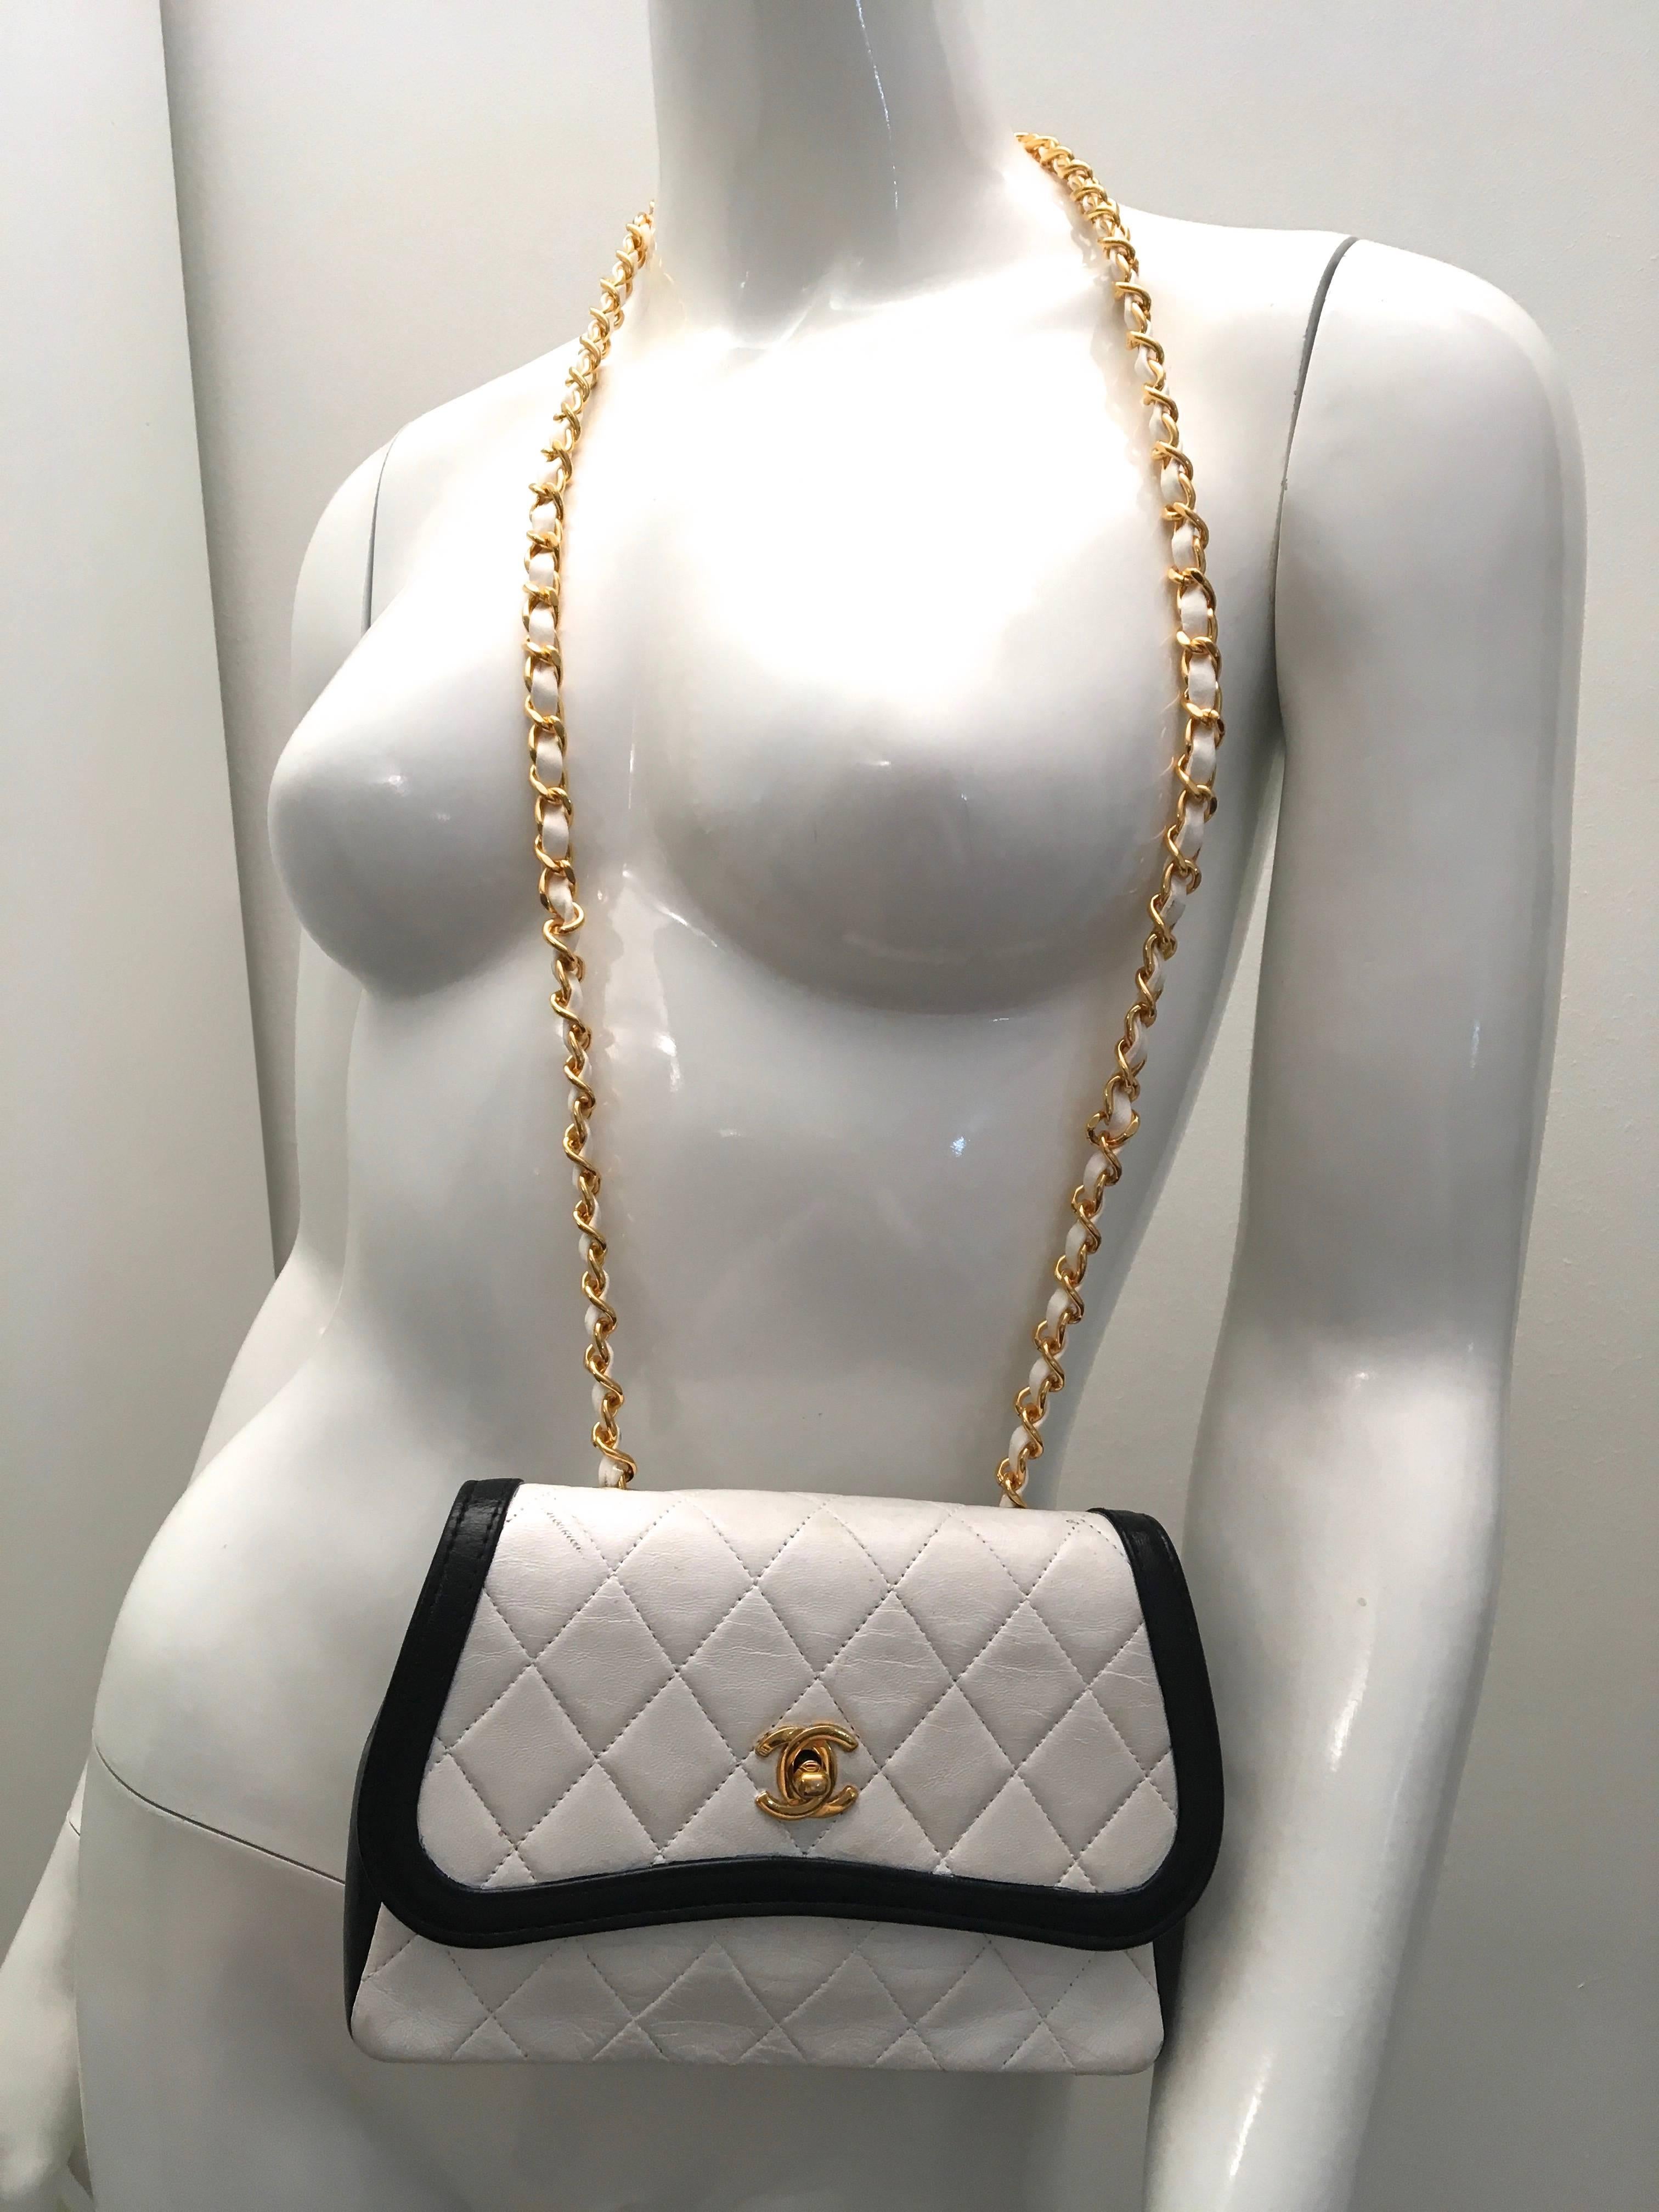 Women's or Men's Chanel Crossbody Bag - Black and White